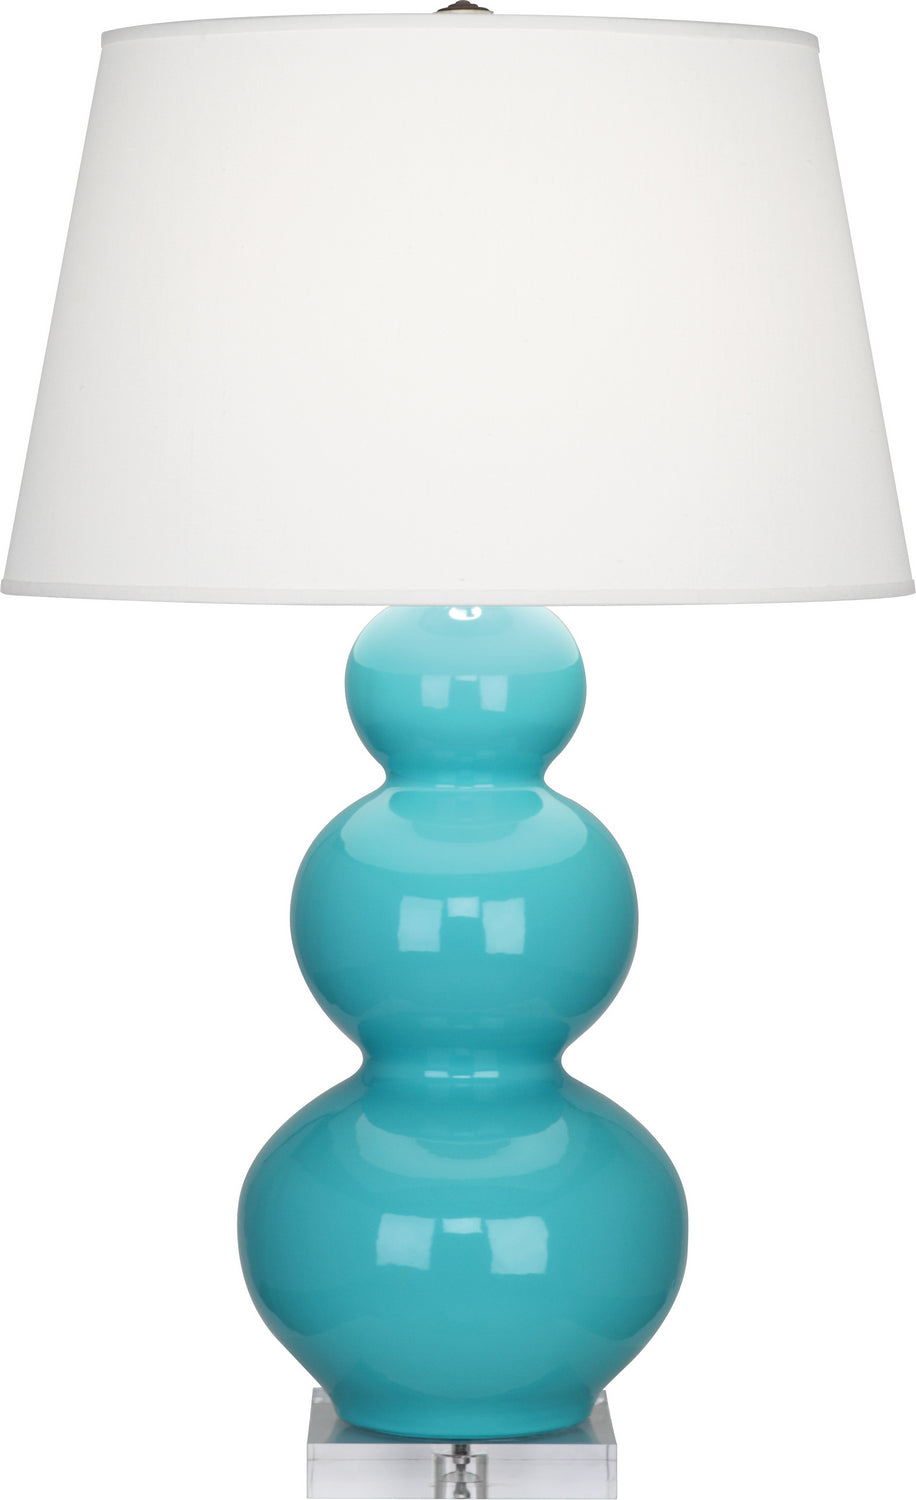 Robert Abbey - One Light Table Lamp - Triple Gourd - Egg Blue Glazed Ceramic w/Lucite Base- Union Lighting Luminaires Decor